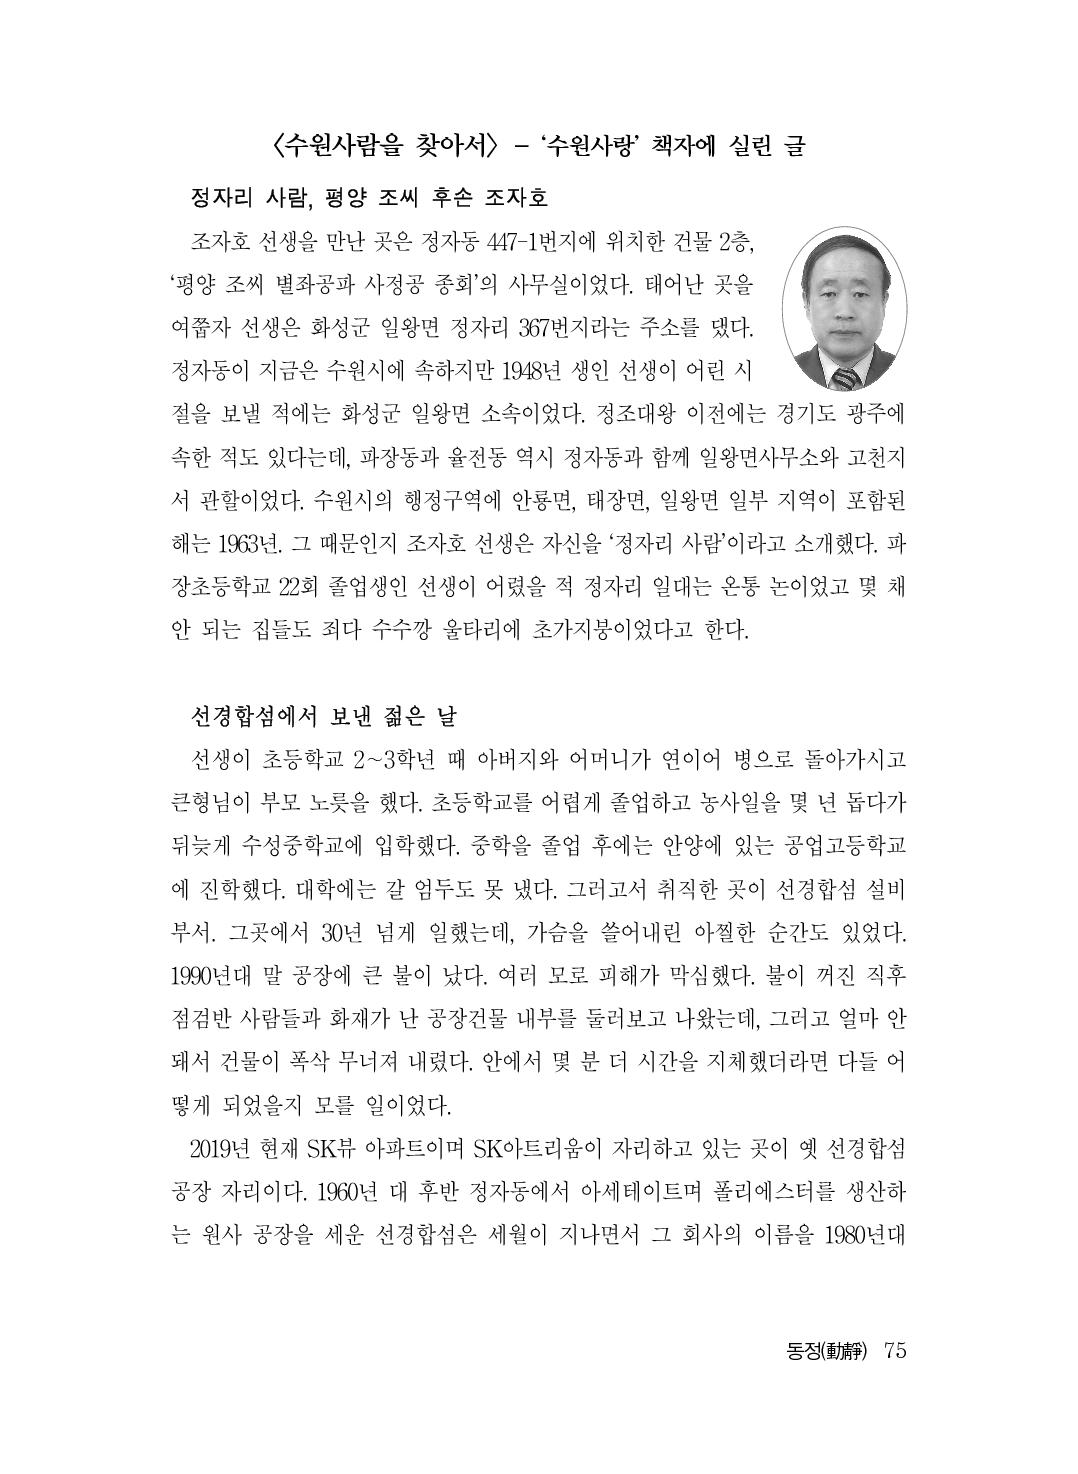 (전체) 송산종보(27호)(최종)_76.jpg